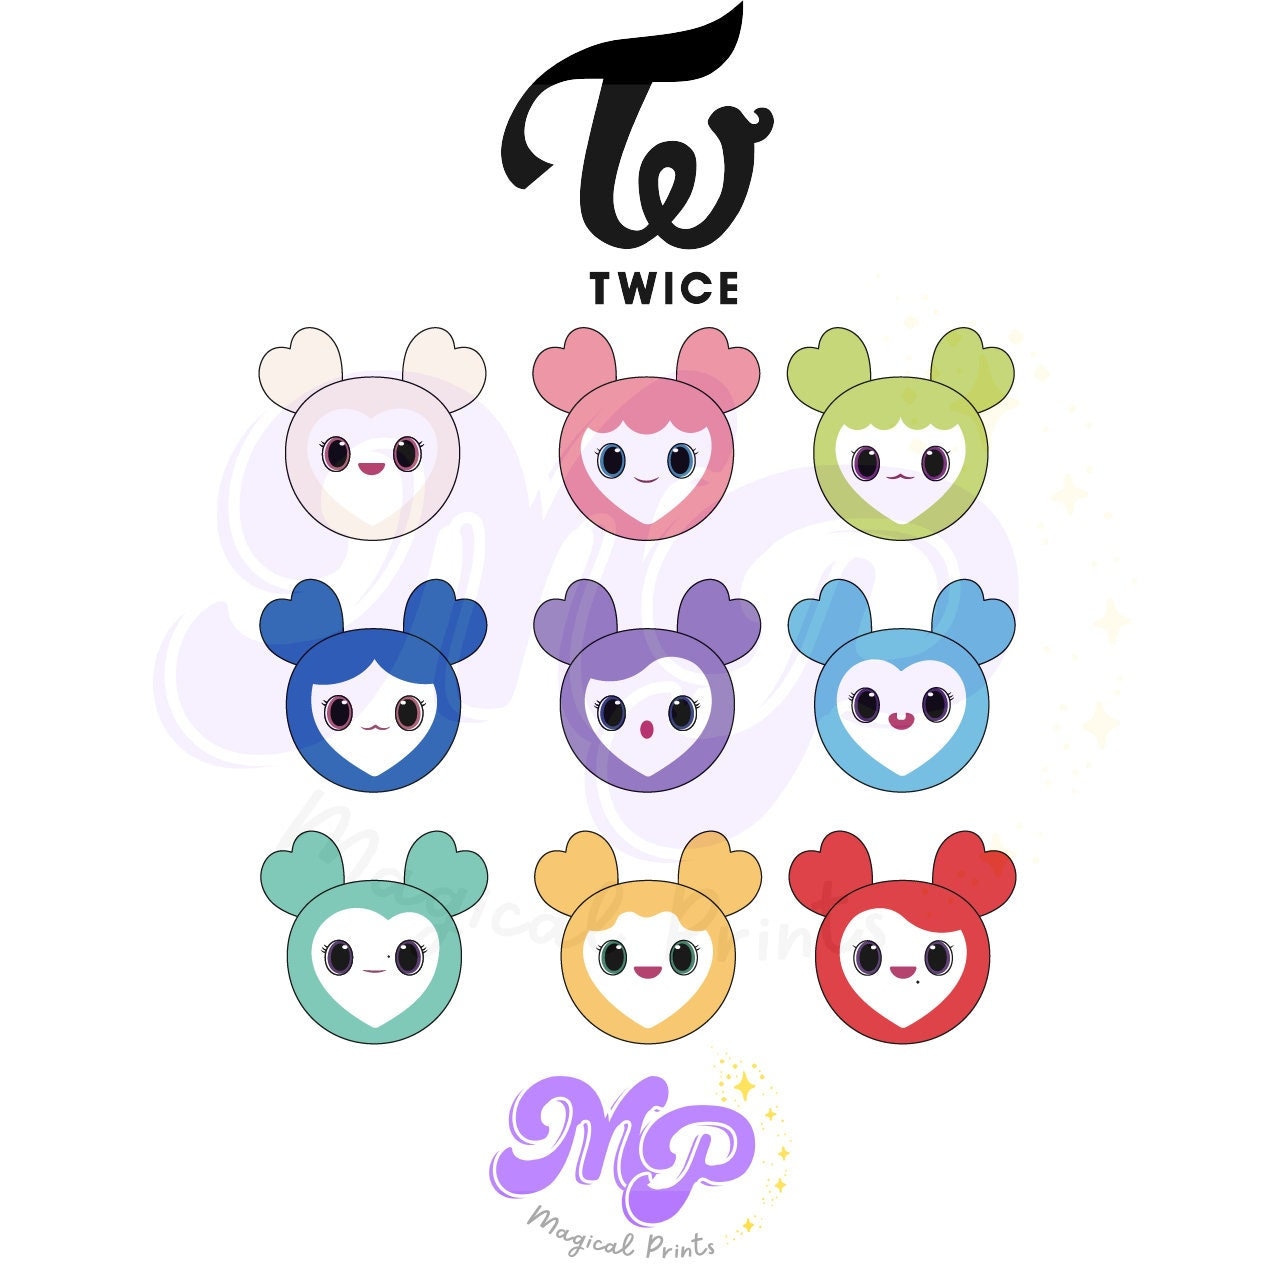 Twice Lovely (all members) | Sticker